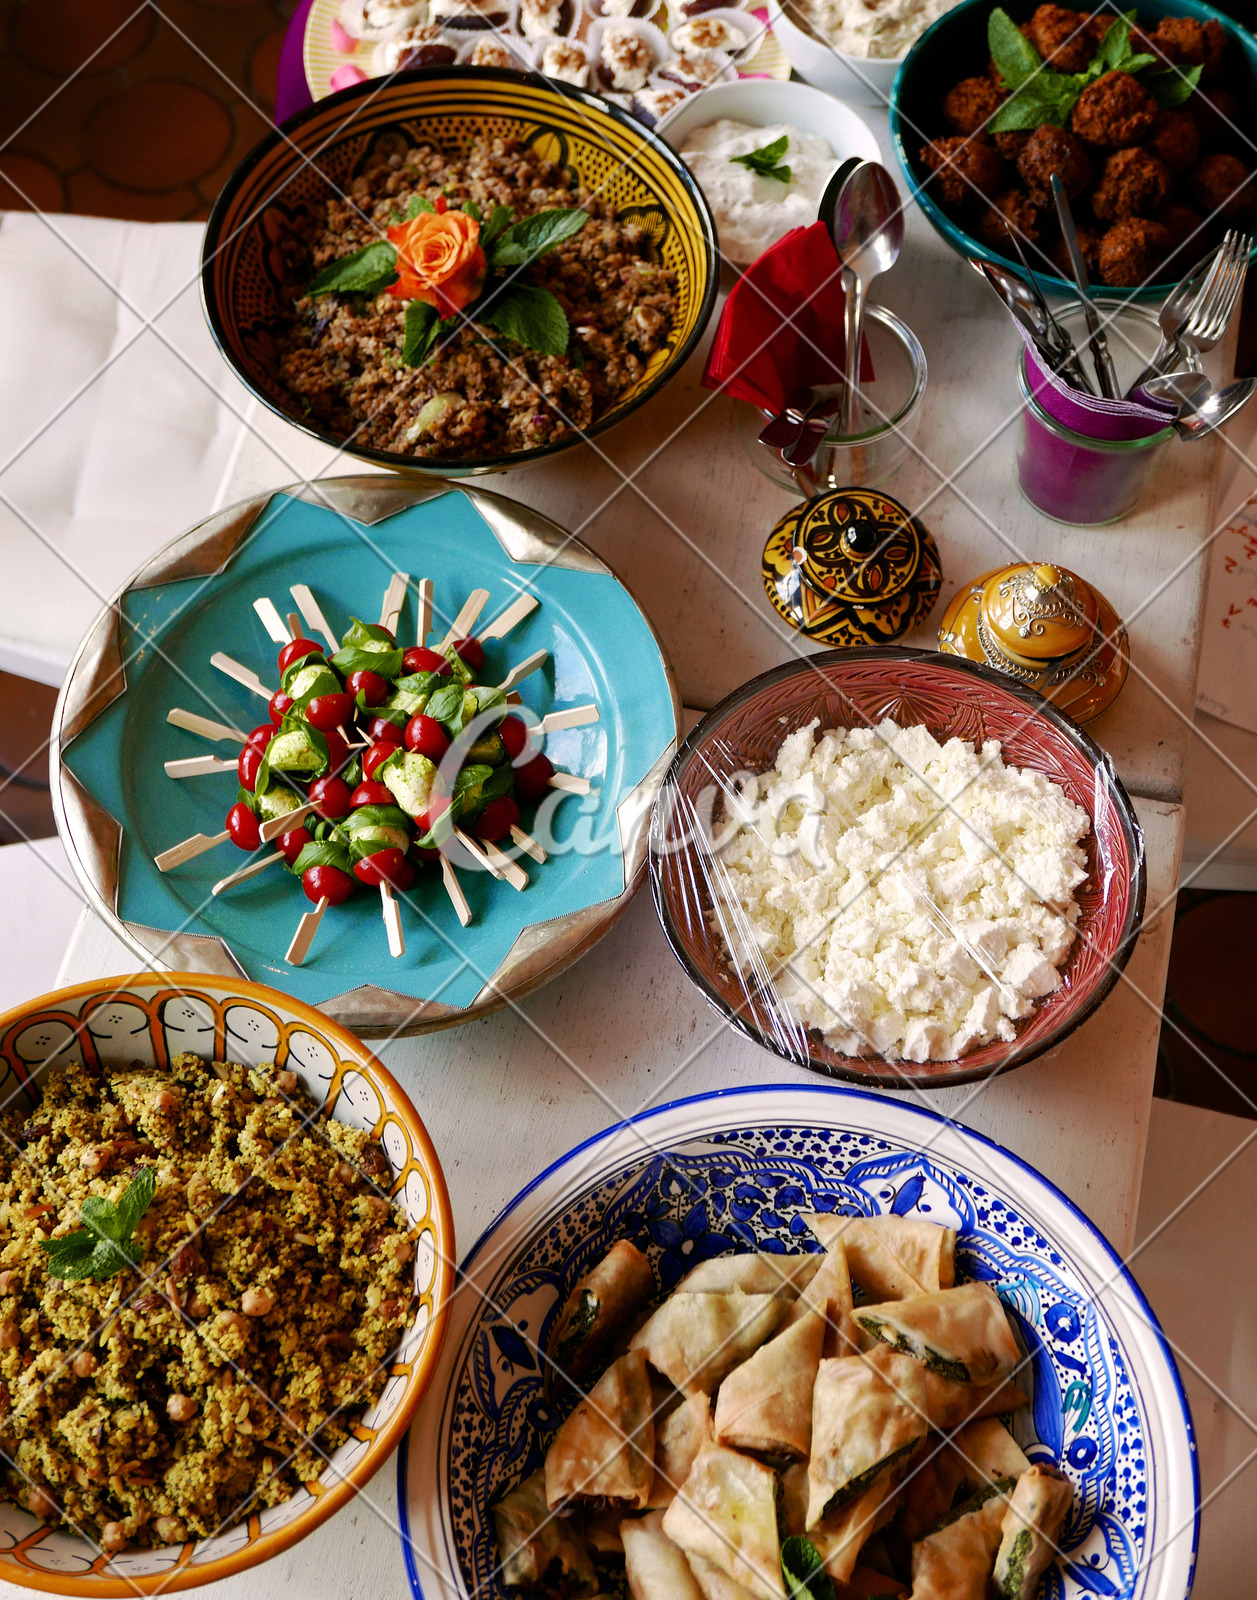 摩洛哥食物 传统tajine盘、蒸丸子和新鲜的沙拉 库存图片. 图片 包括有 正餐, 文化, 烹调, 黏土 - 142289475